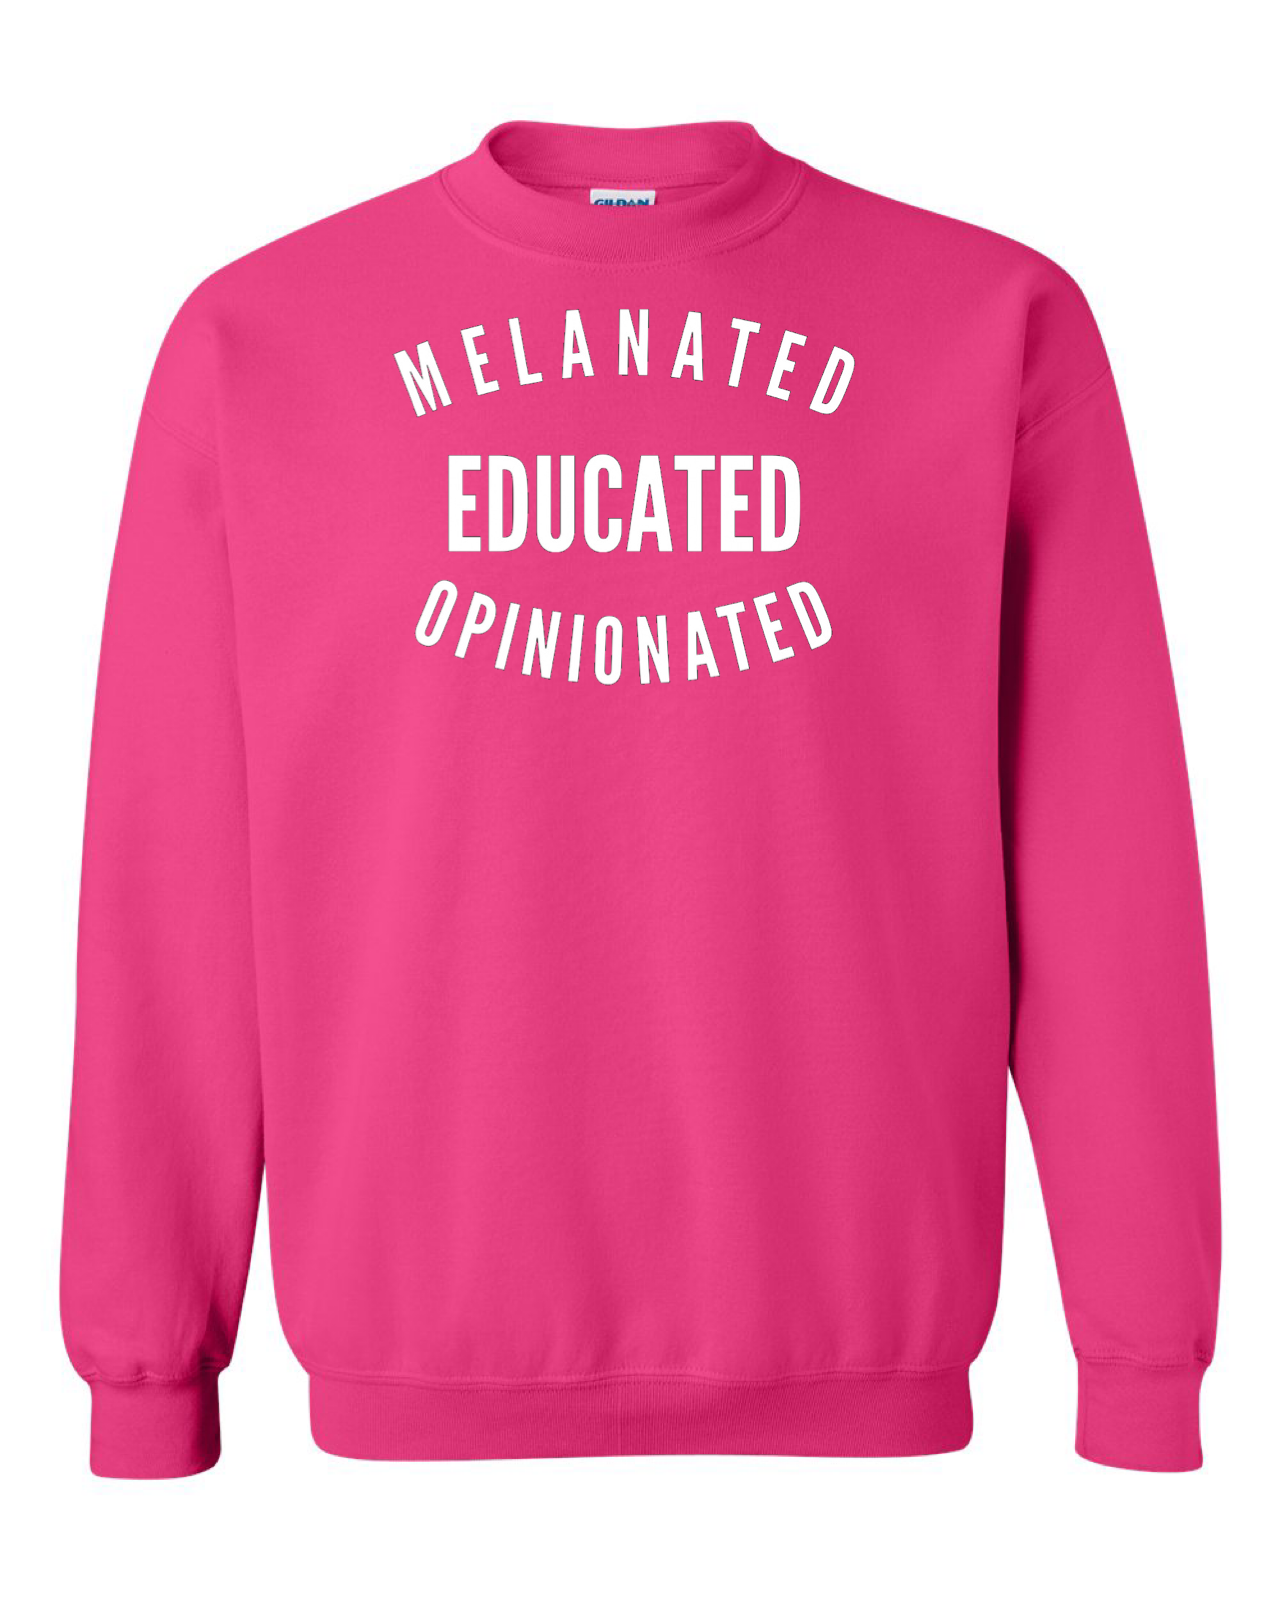 Melanated Educated Opinionated Crewneck Sweatshirt